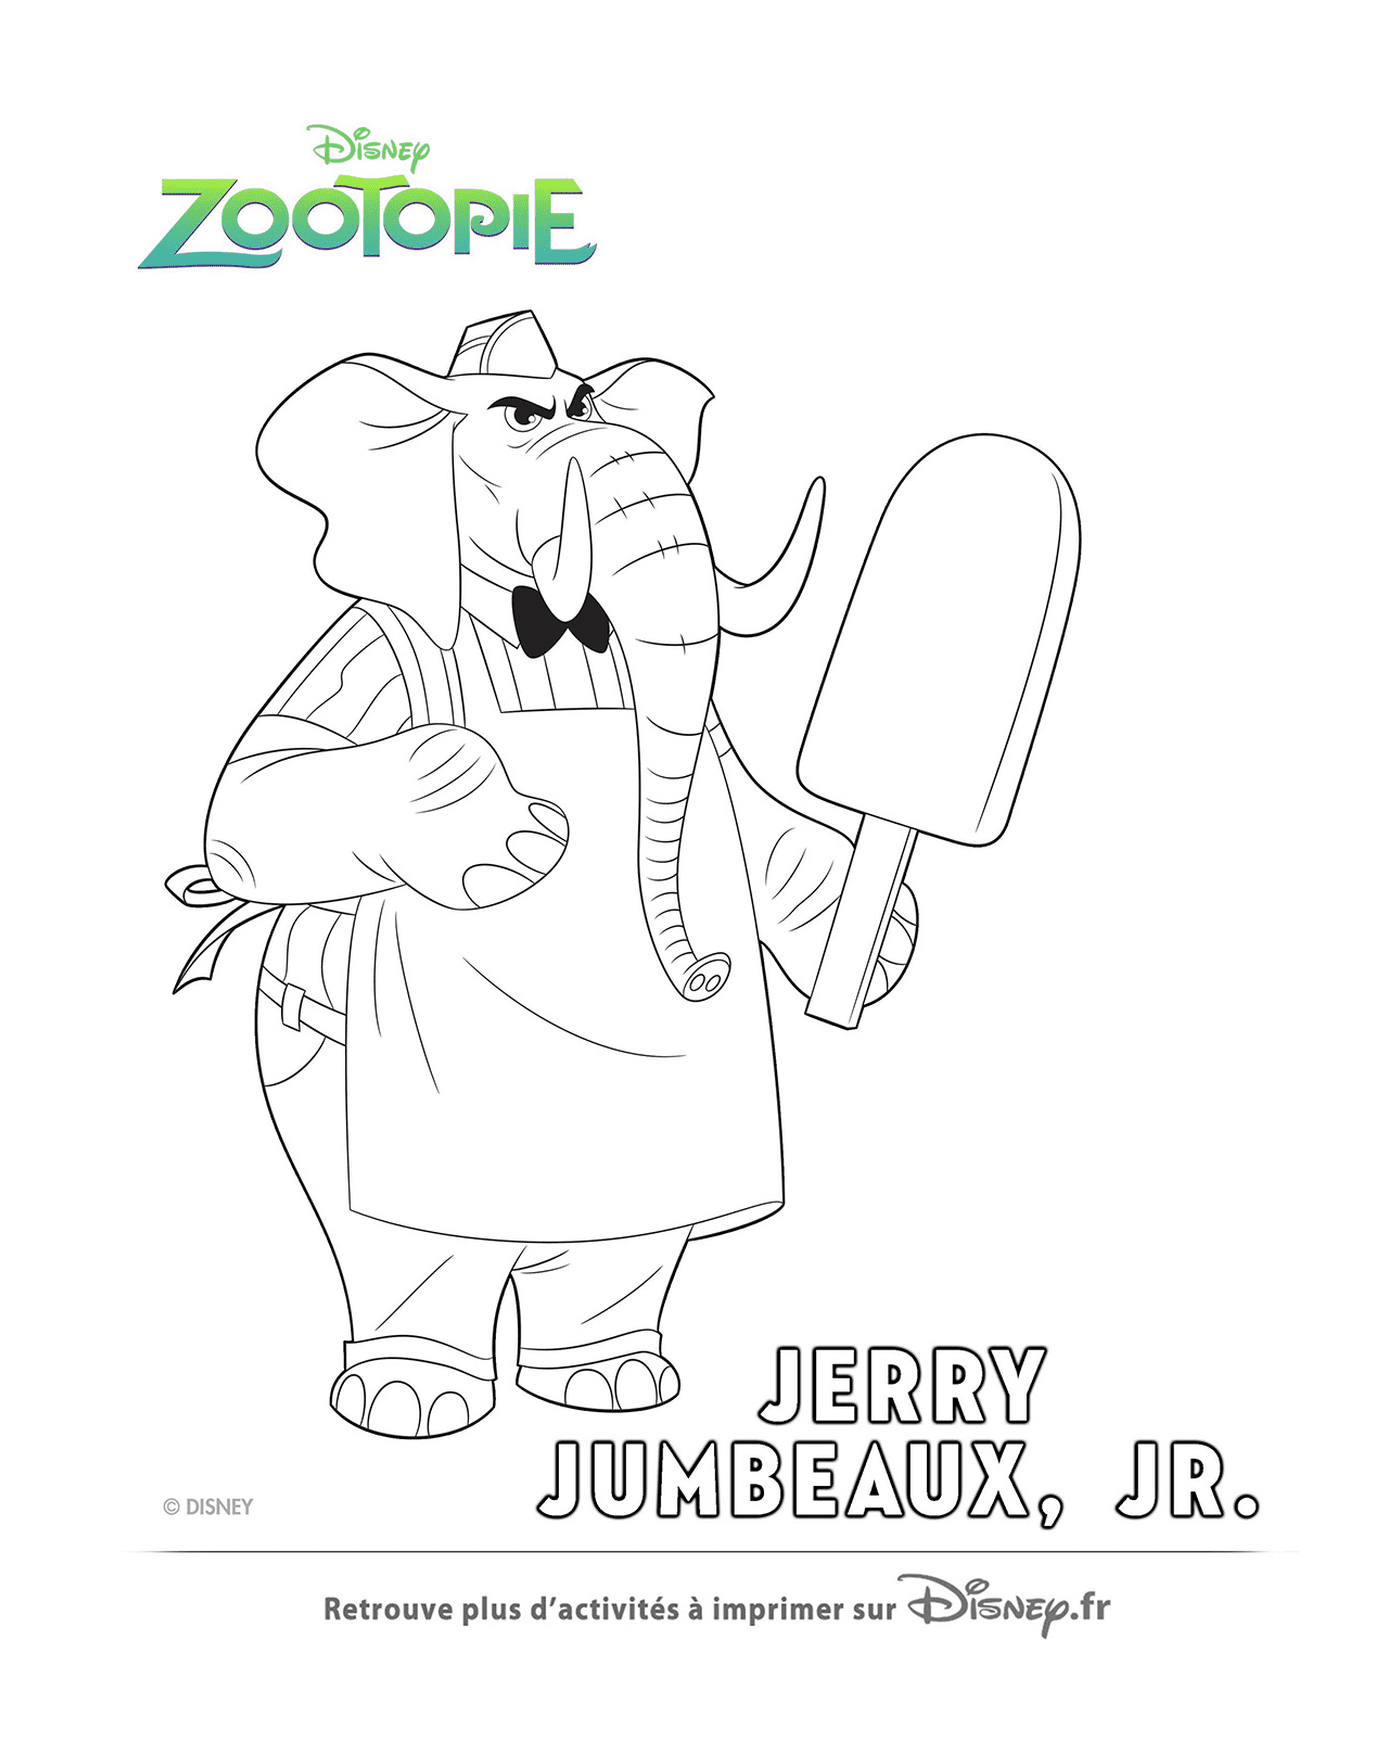  Джерри, продавец мороженого Зутопи 